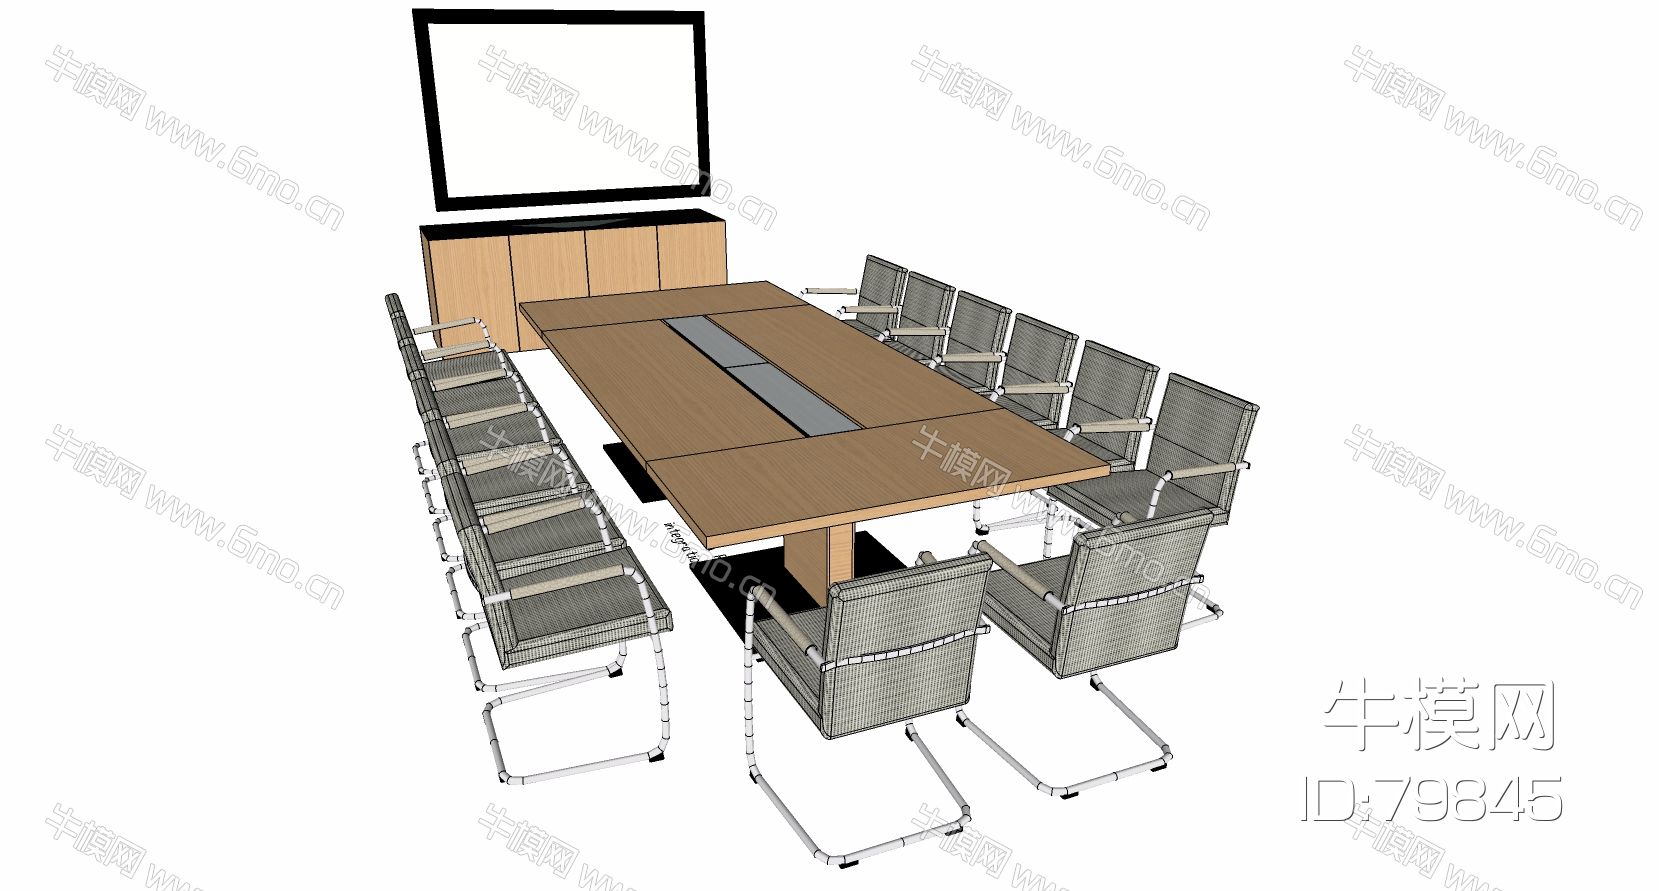 现代办公家具会议室桌椅子